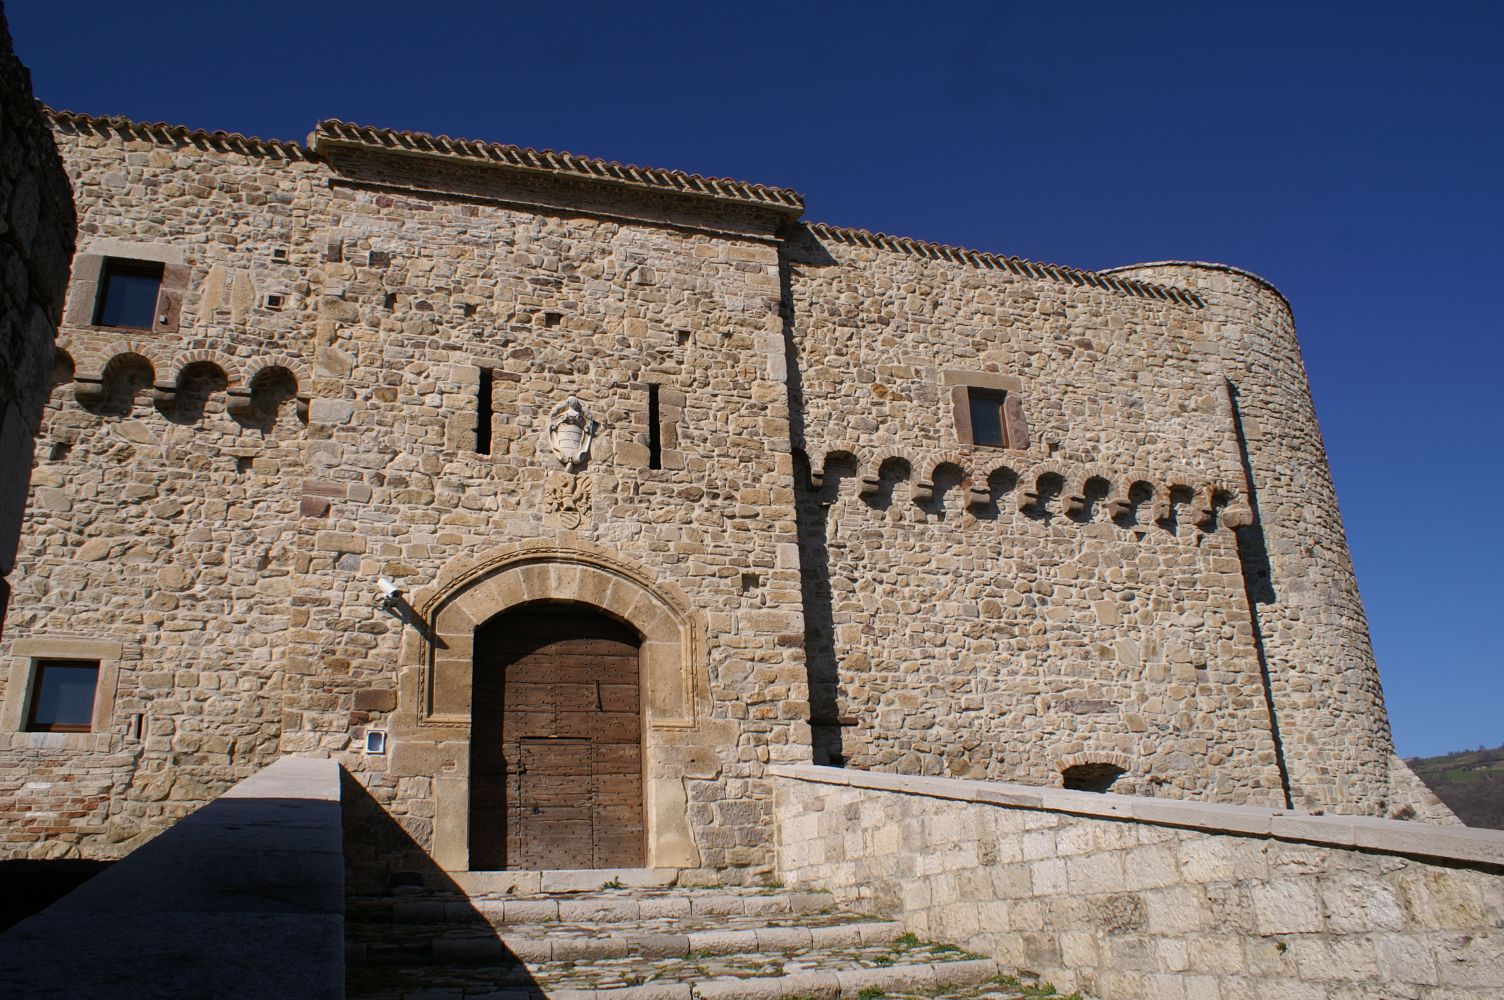 Il castello di Civitacampomarano